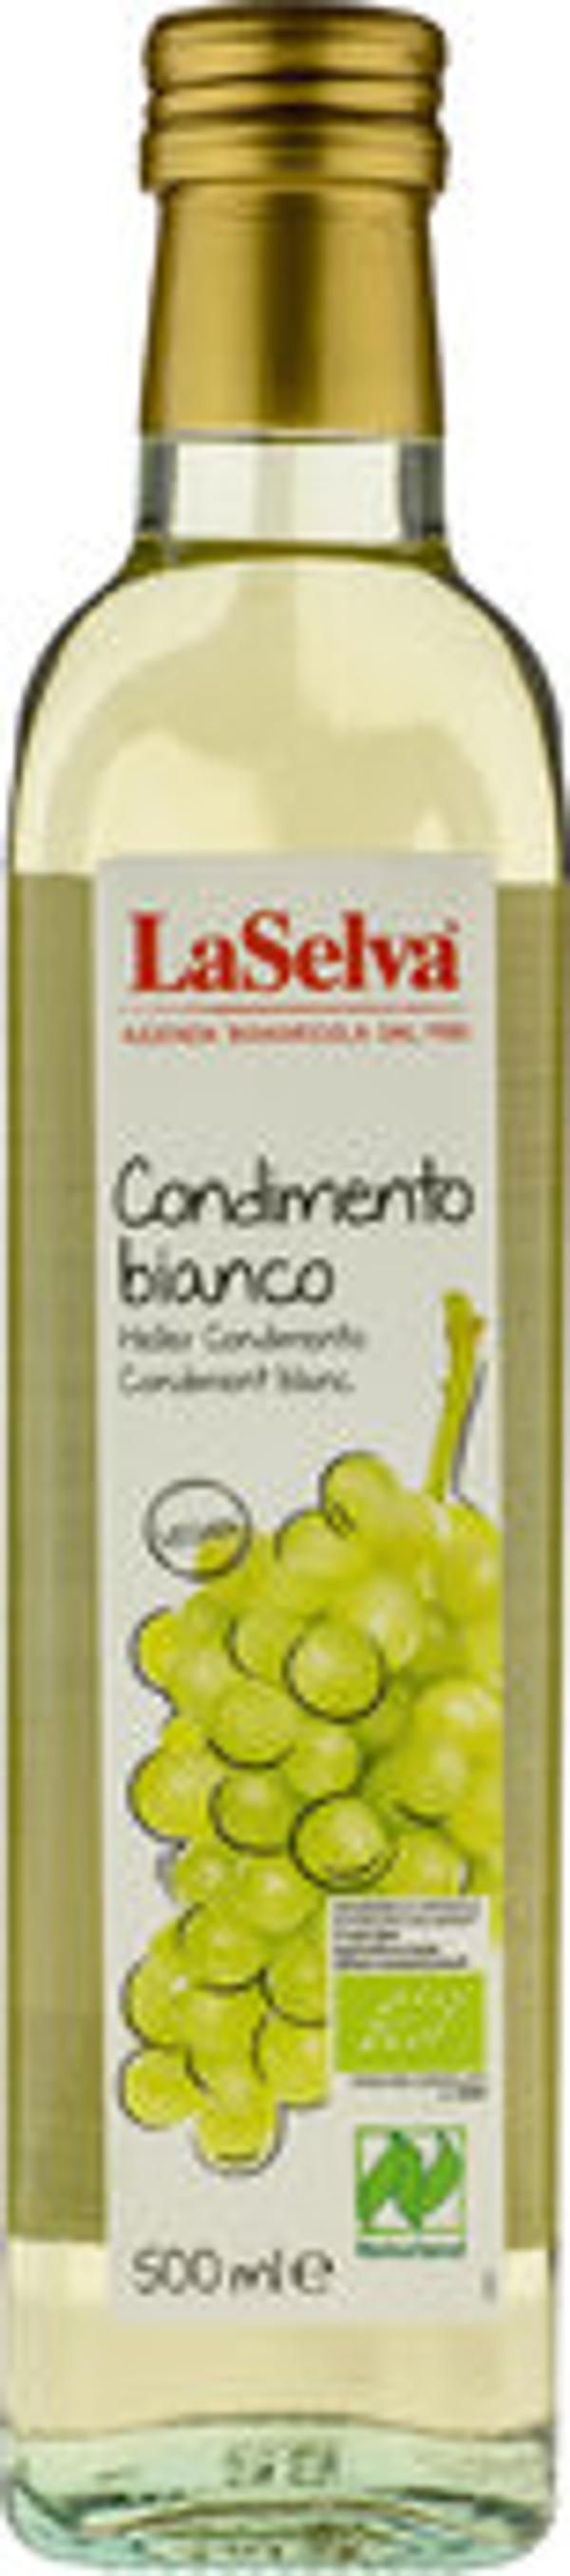 Produktfoto zu Condimento Bianco 500ml